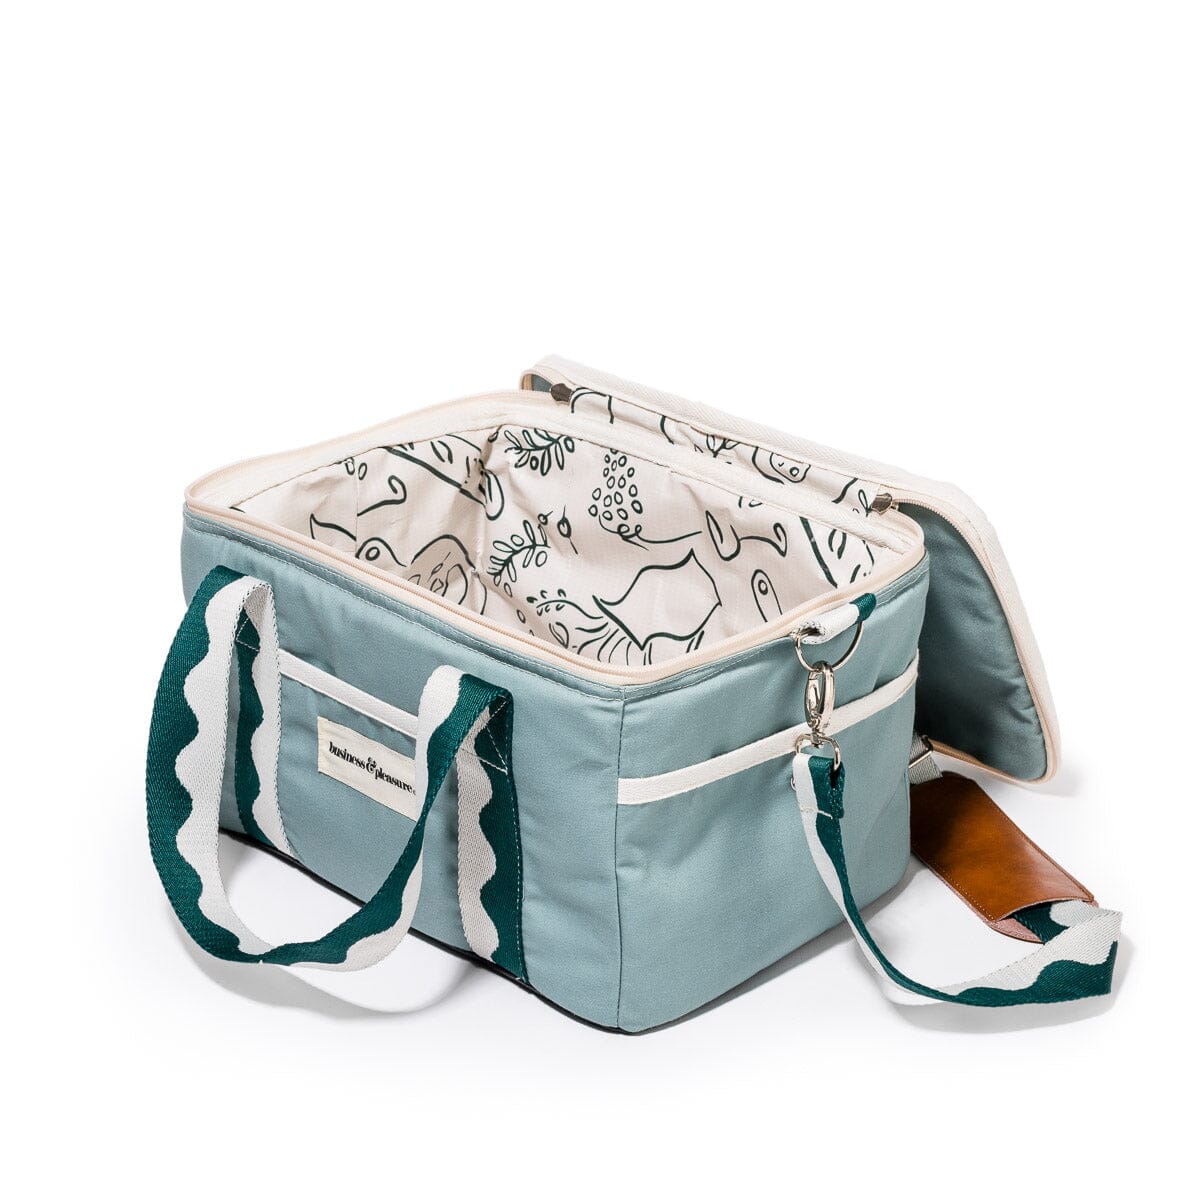 The Premium Cooler Bag - Rivie Green Premium Cooler Bag Business & Pleasure Co Aus 